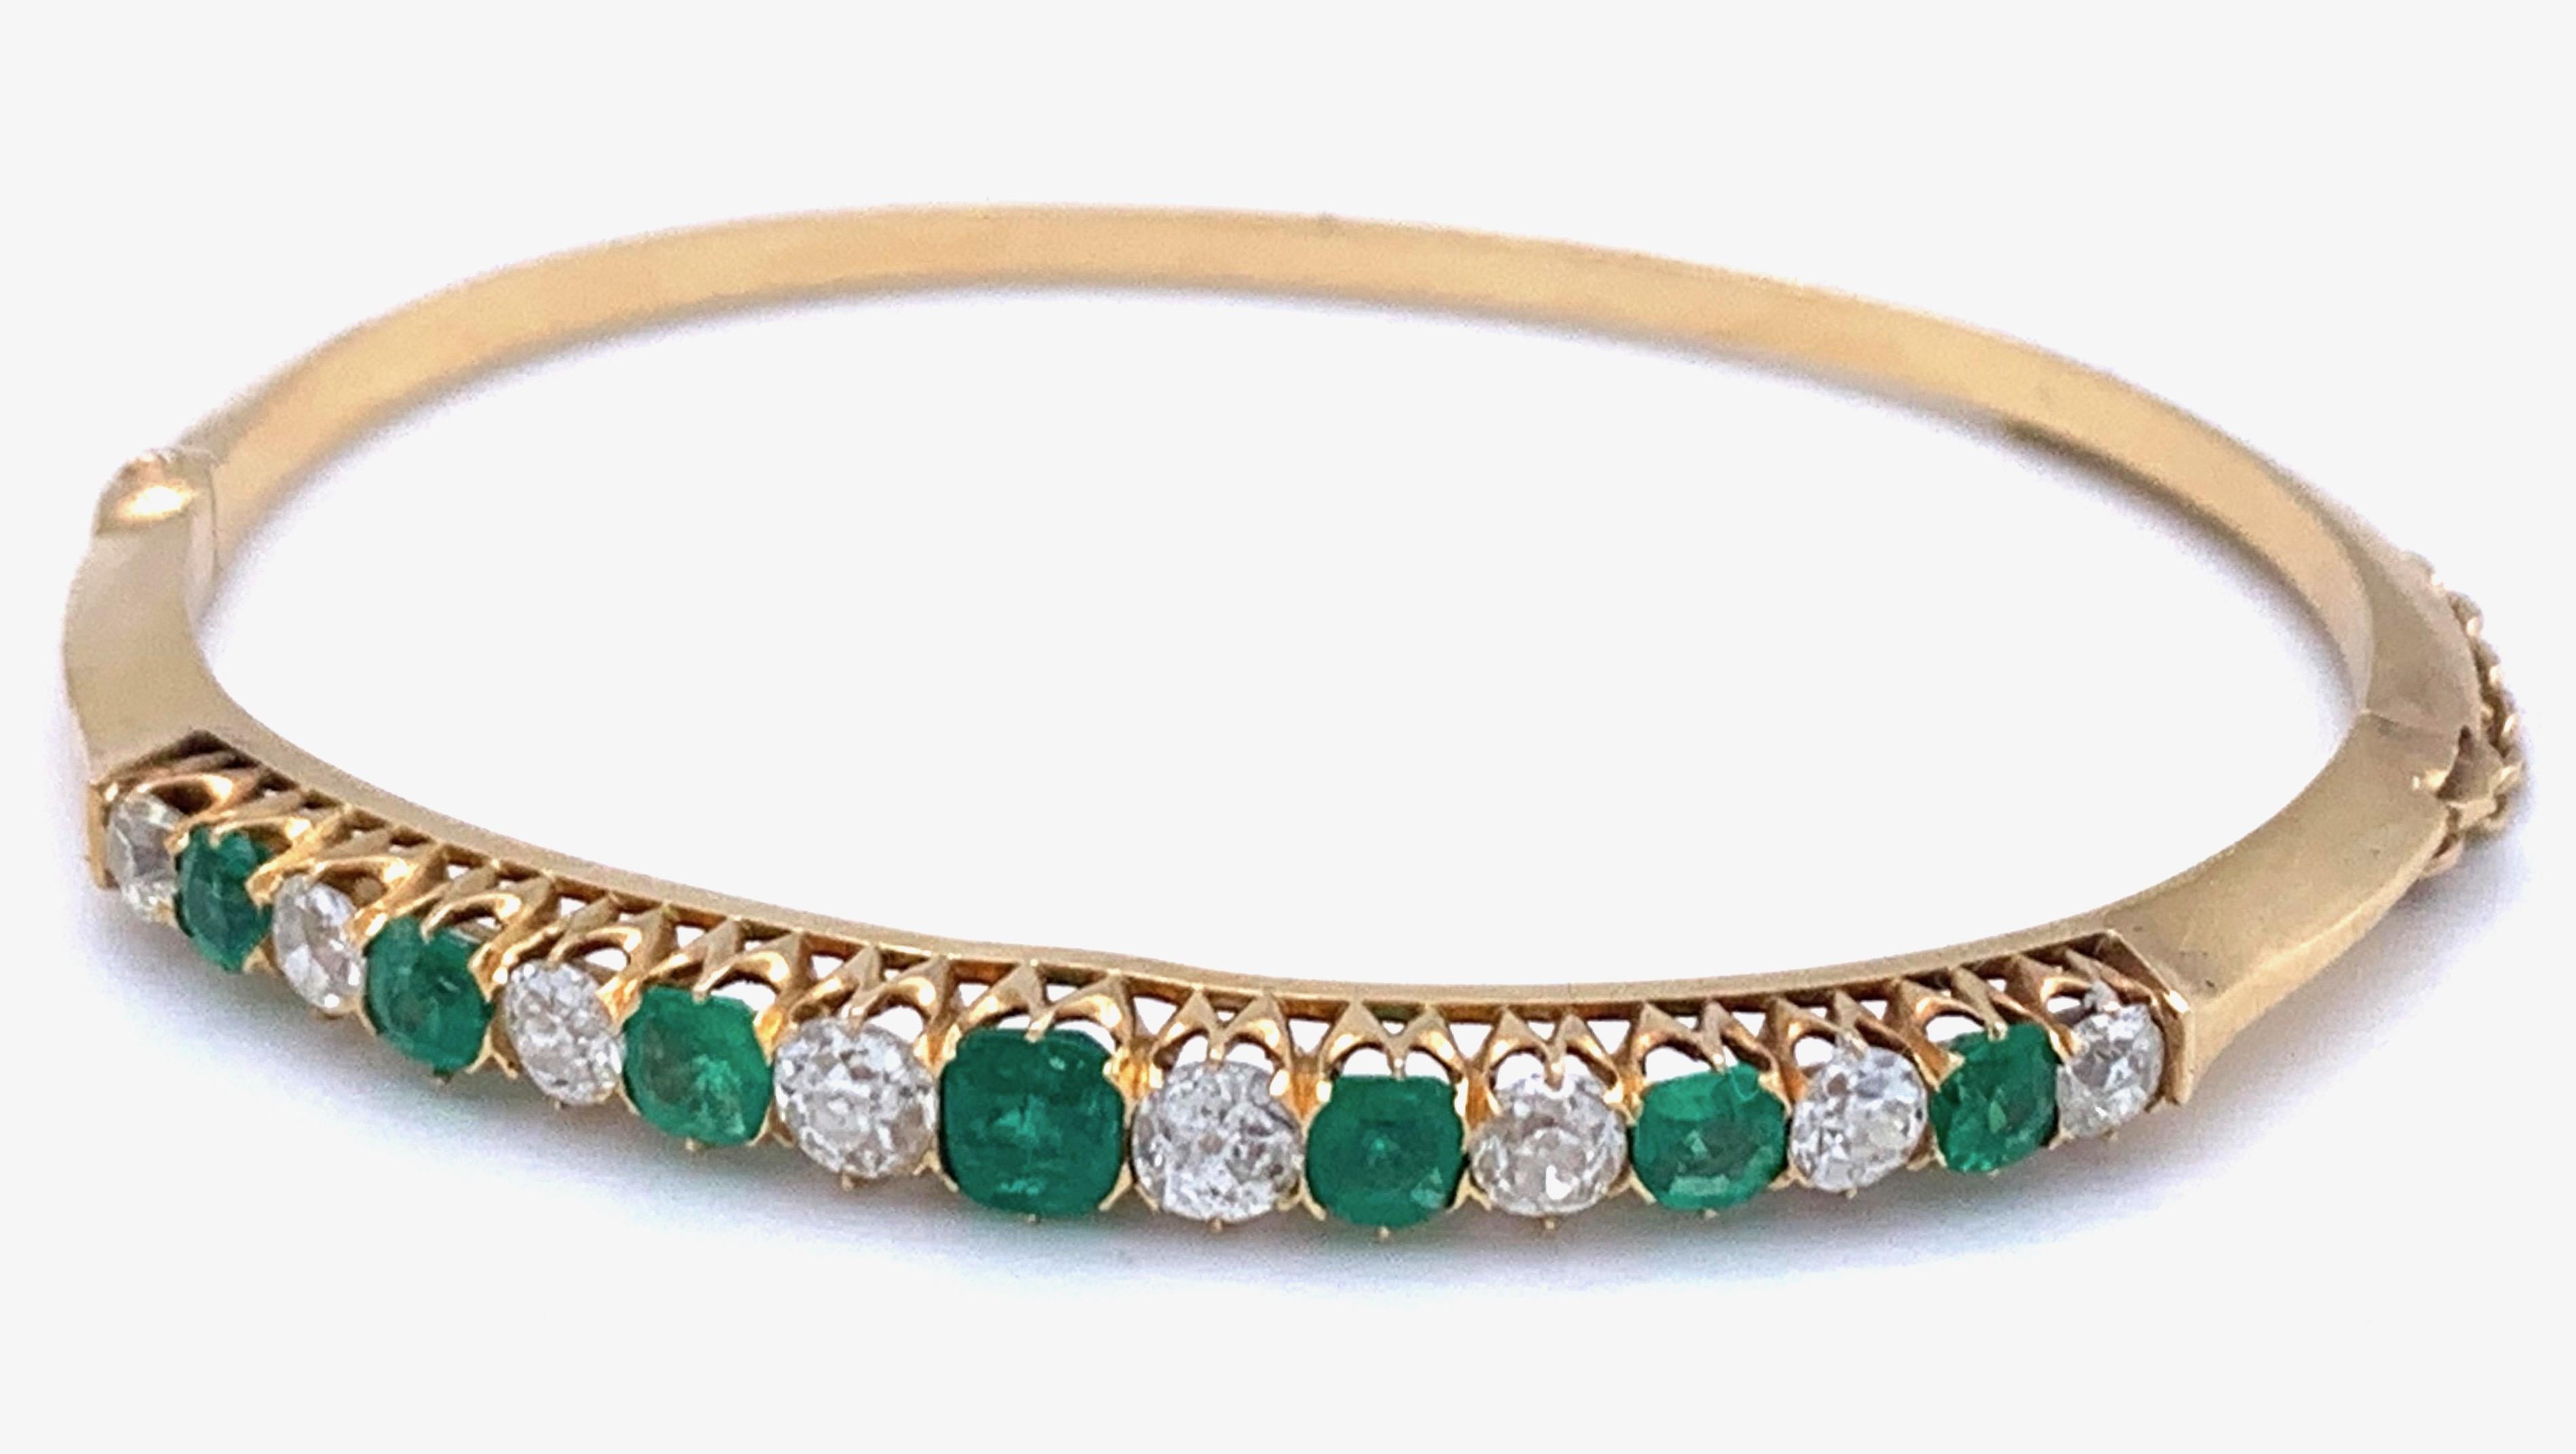 Le bracelet est serti de huit diamants taille ancienne (1,5 ct au total) ainsi que de sept émeraudes (1,4 ct au total), et est fabriqué en or rouge 18 carats. Le fermoir est en or 14 kt.

